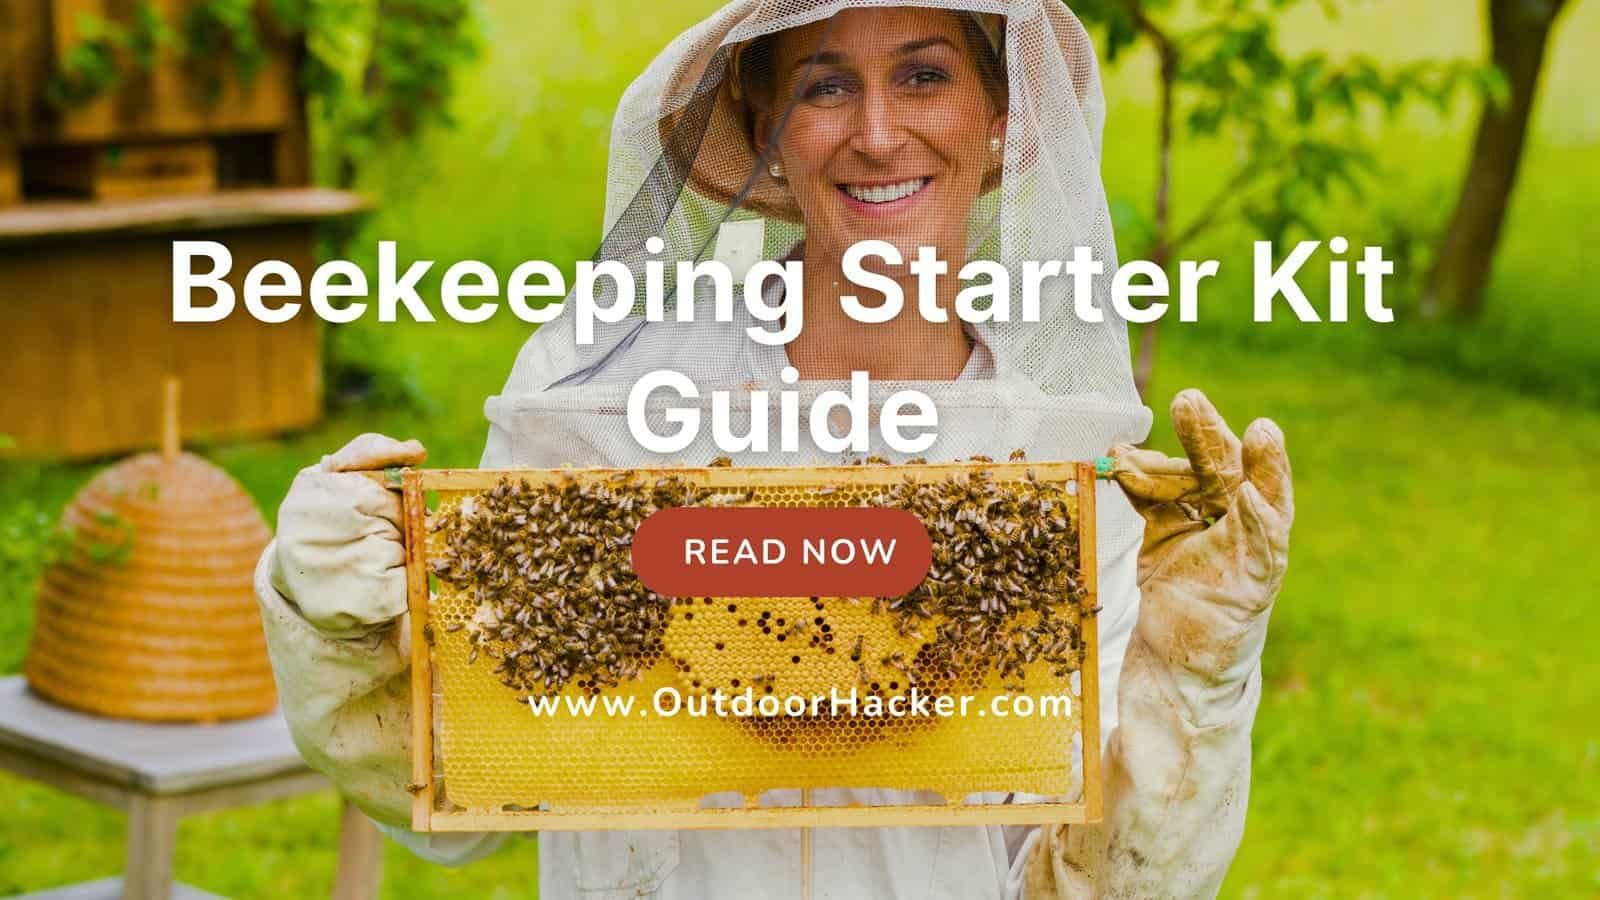 Beekeeping Starter Kit Guide